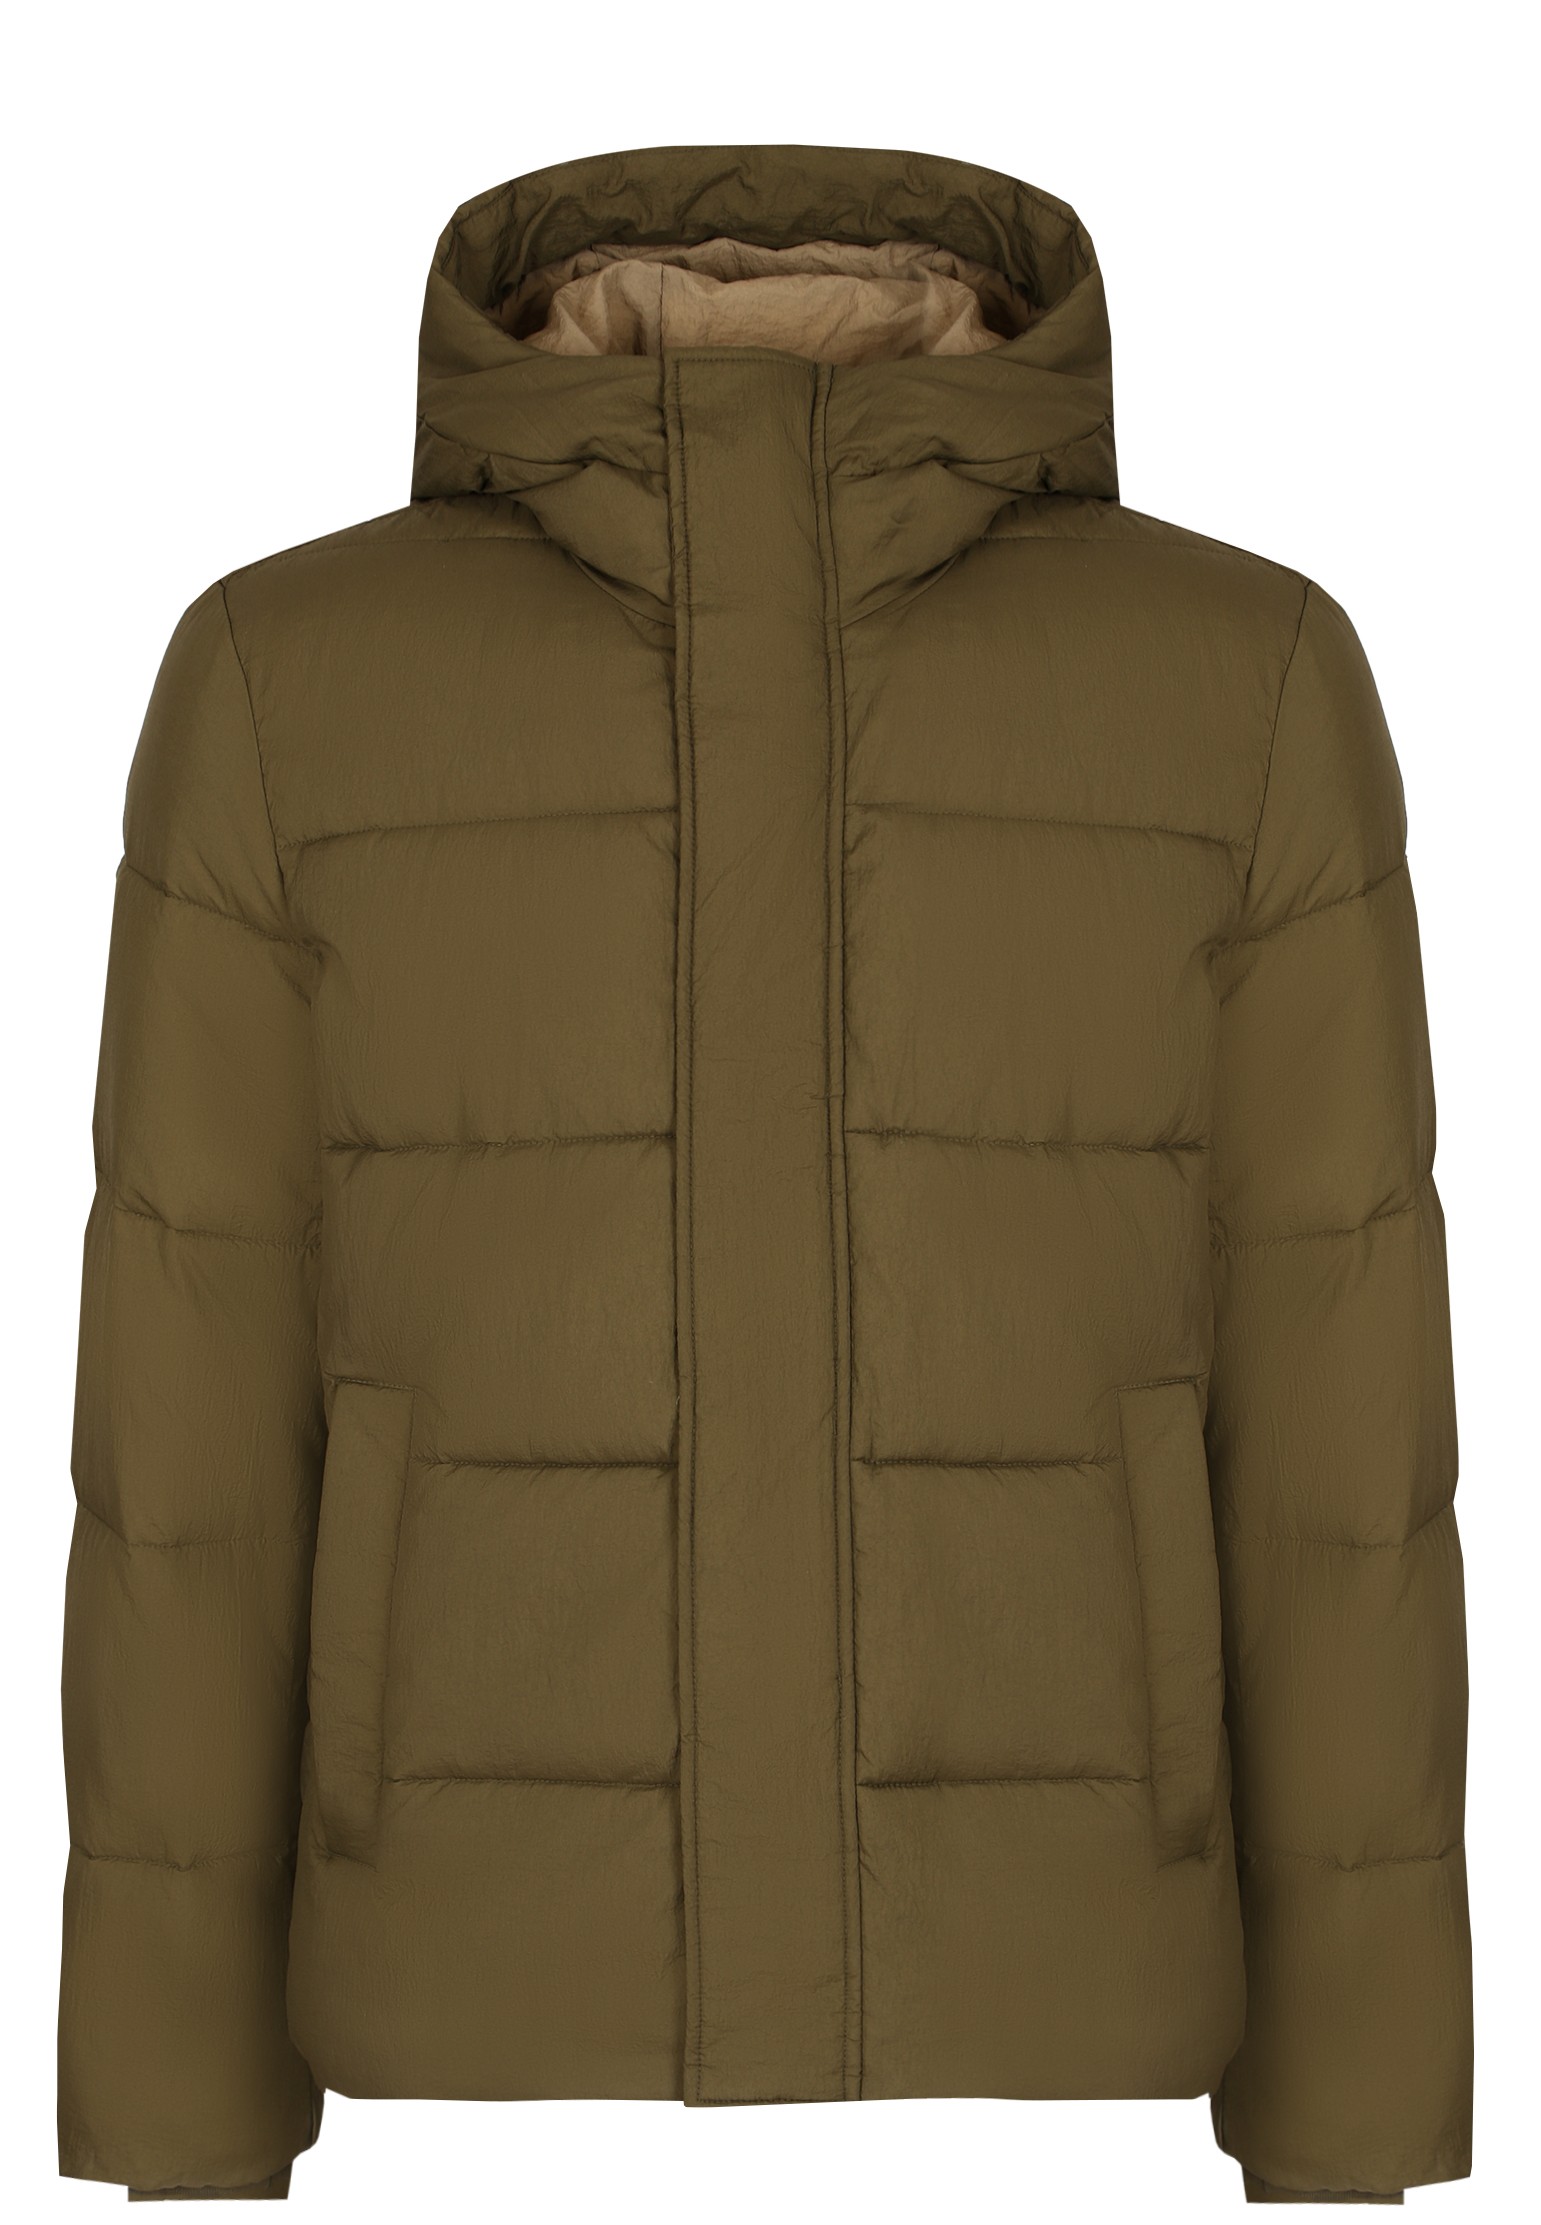 Зимняя куртка мужская Strellson 137049 зеленая 54 EU